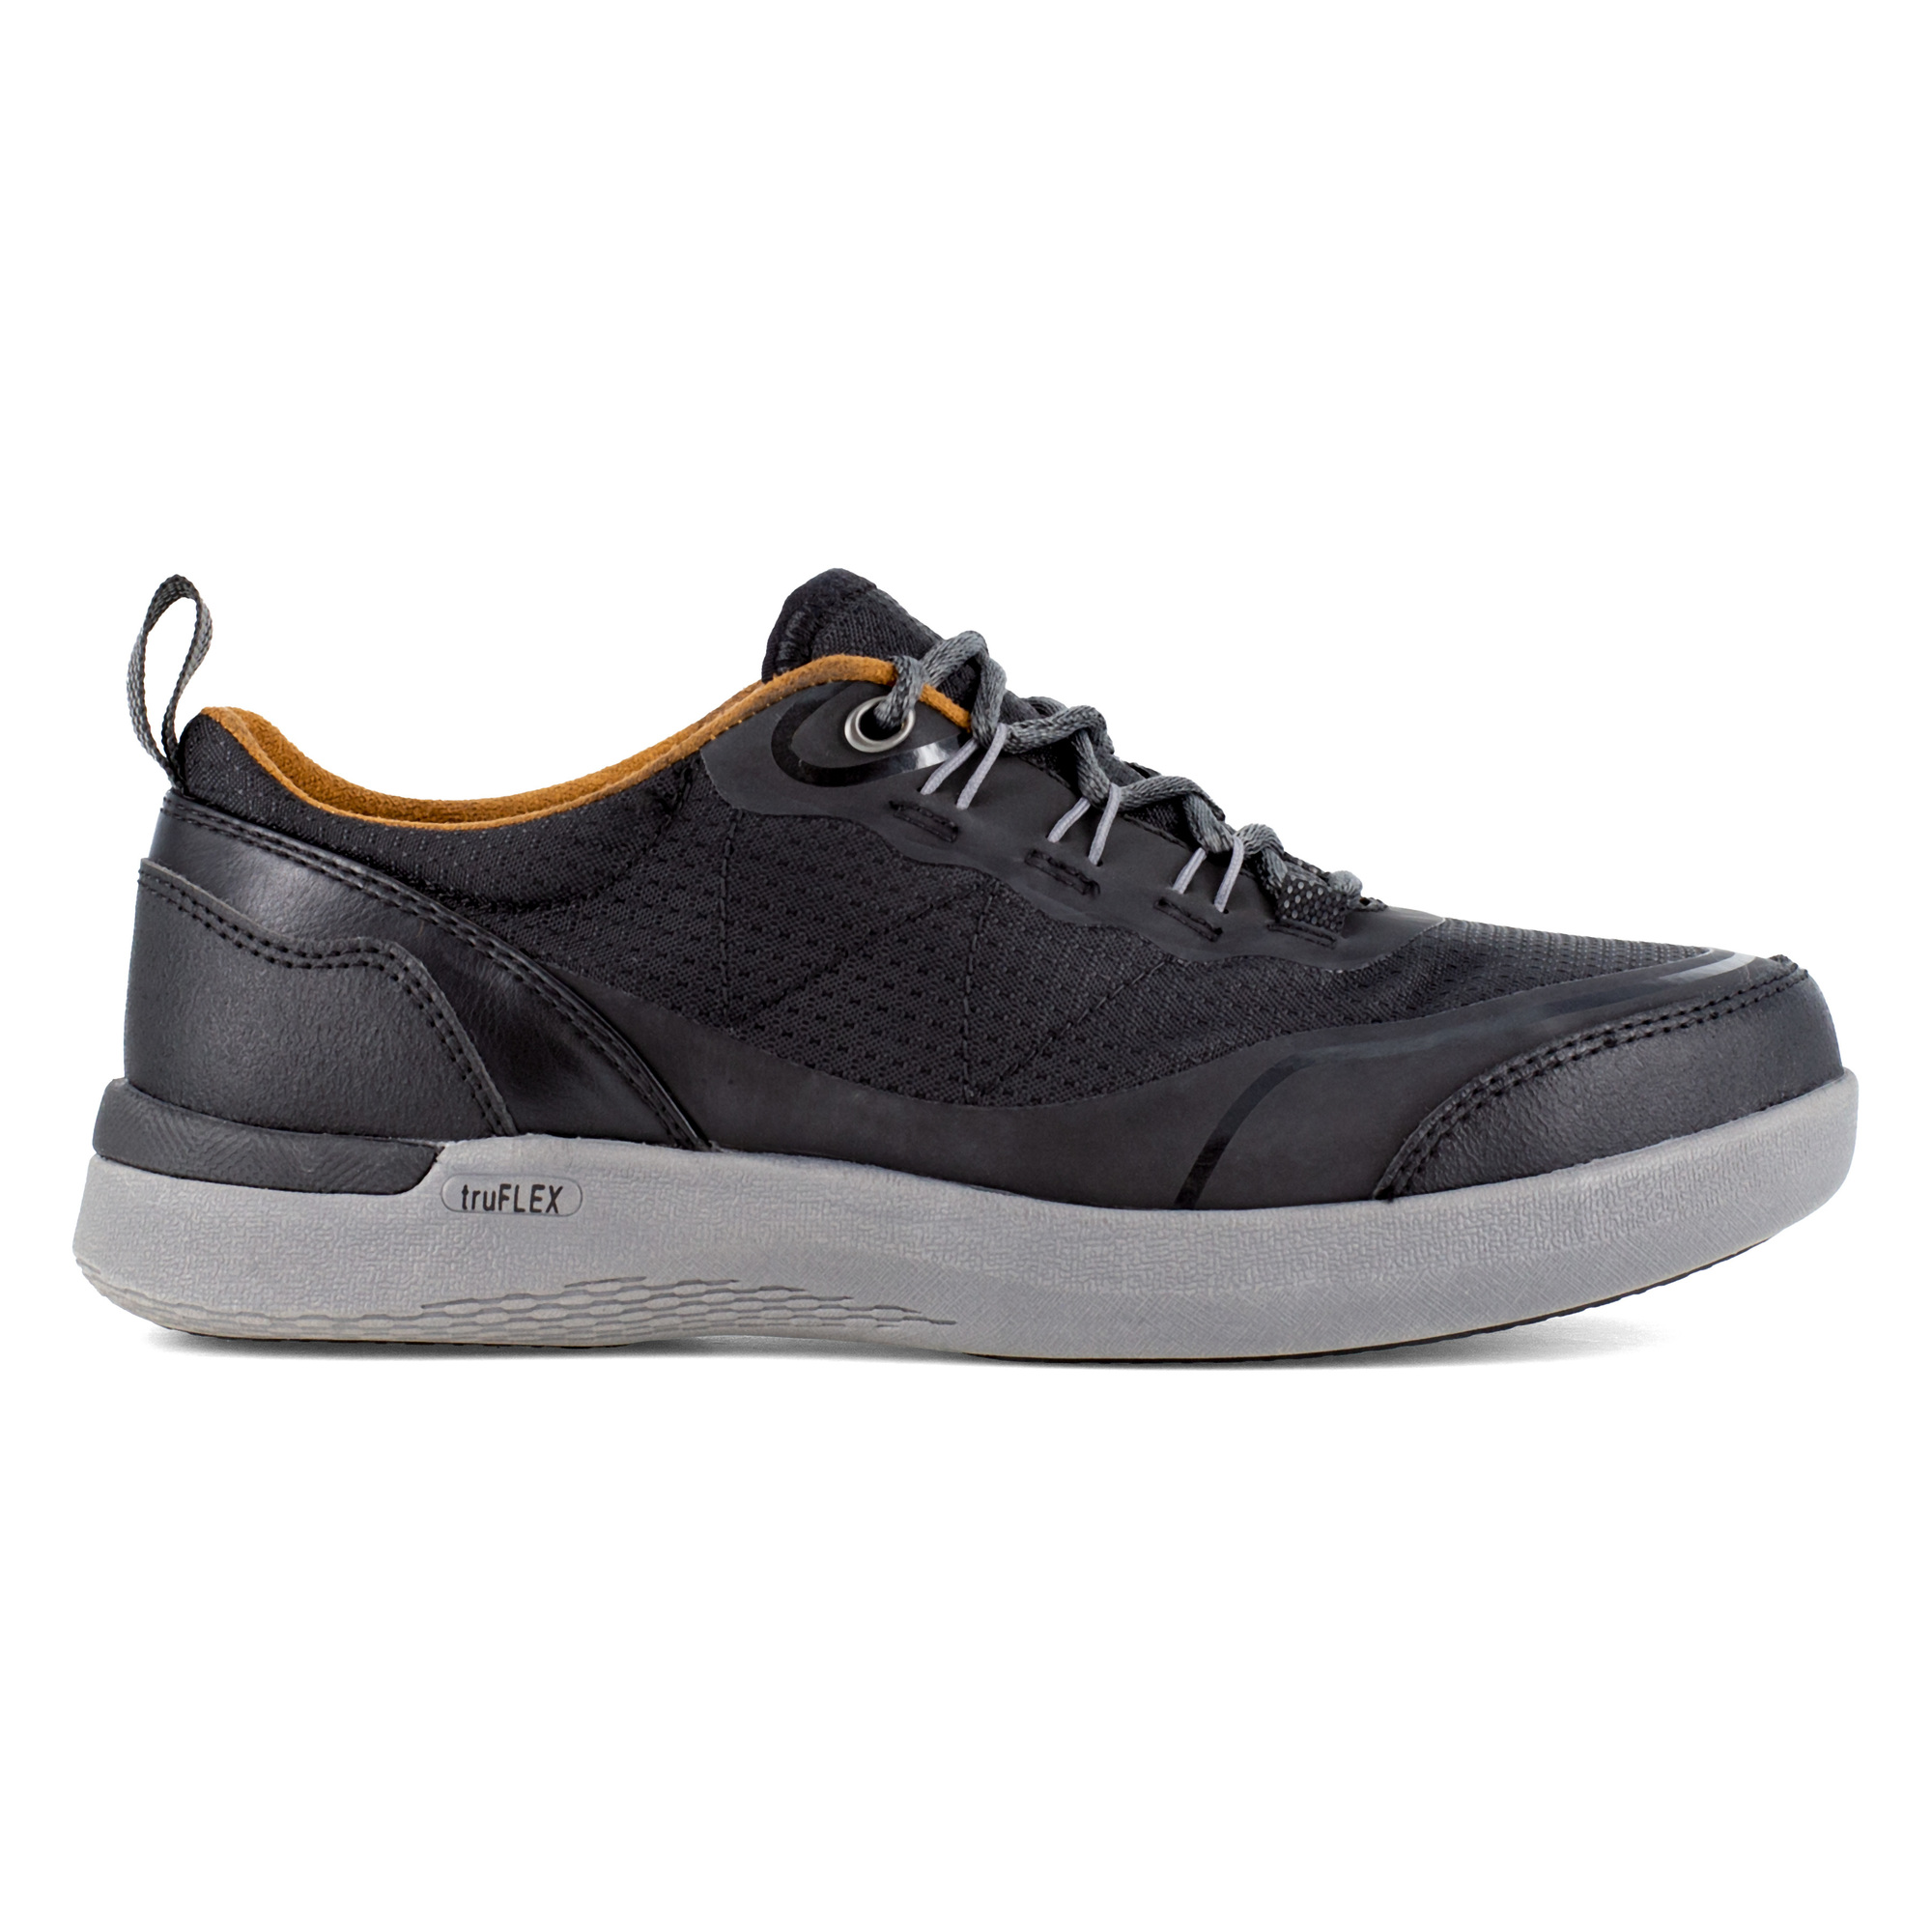 Rockport Works, Work Sneaker, Size 7, Width Medium, Color Black, Model RK687